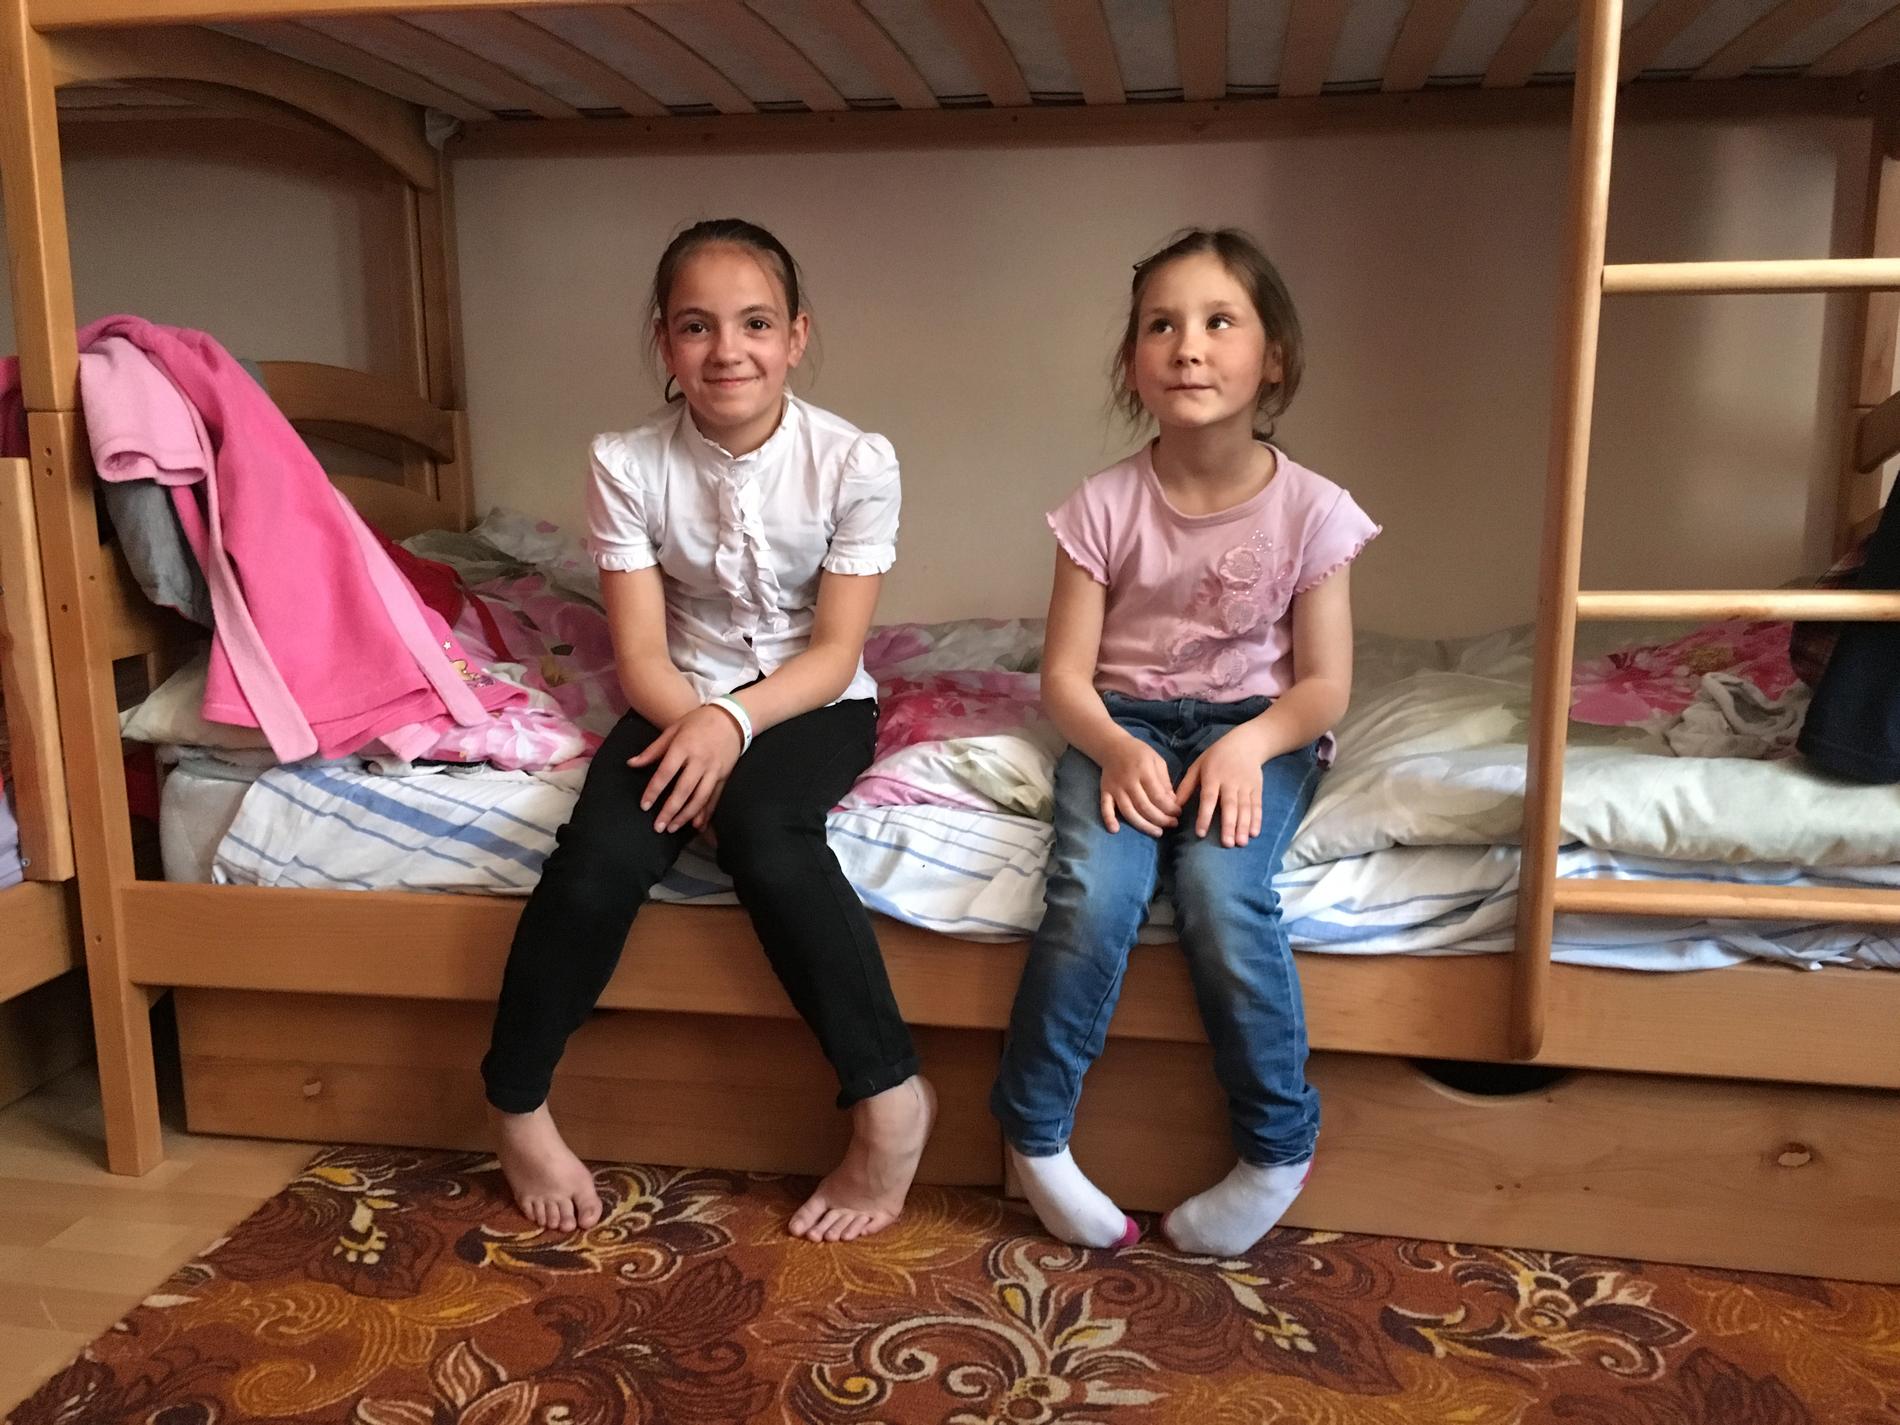 Ira, 12, och Carina, 6, har fått nya föräldrar. Tillsammans med sina två fostersystrar har de ett eget rum. De har gjort klart för familjens fyra pojkar att de inte är välkomna in.